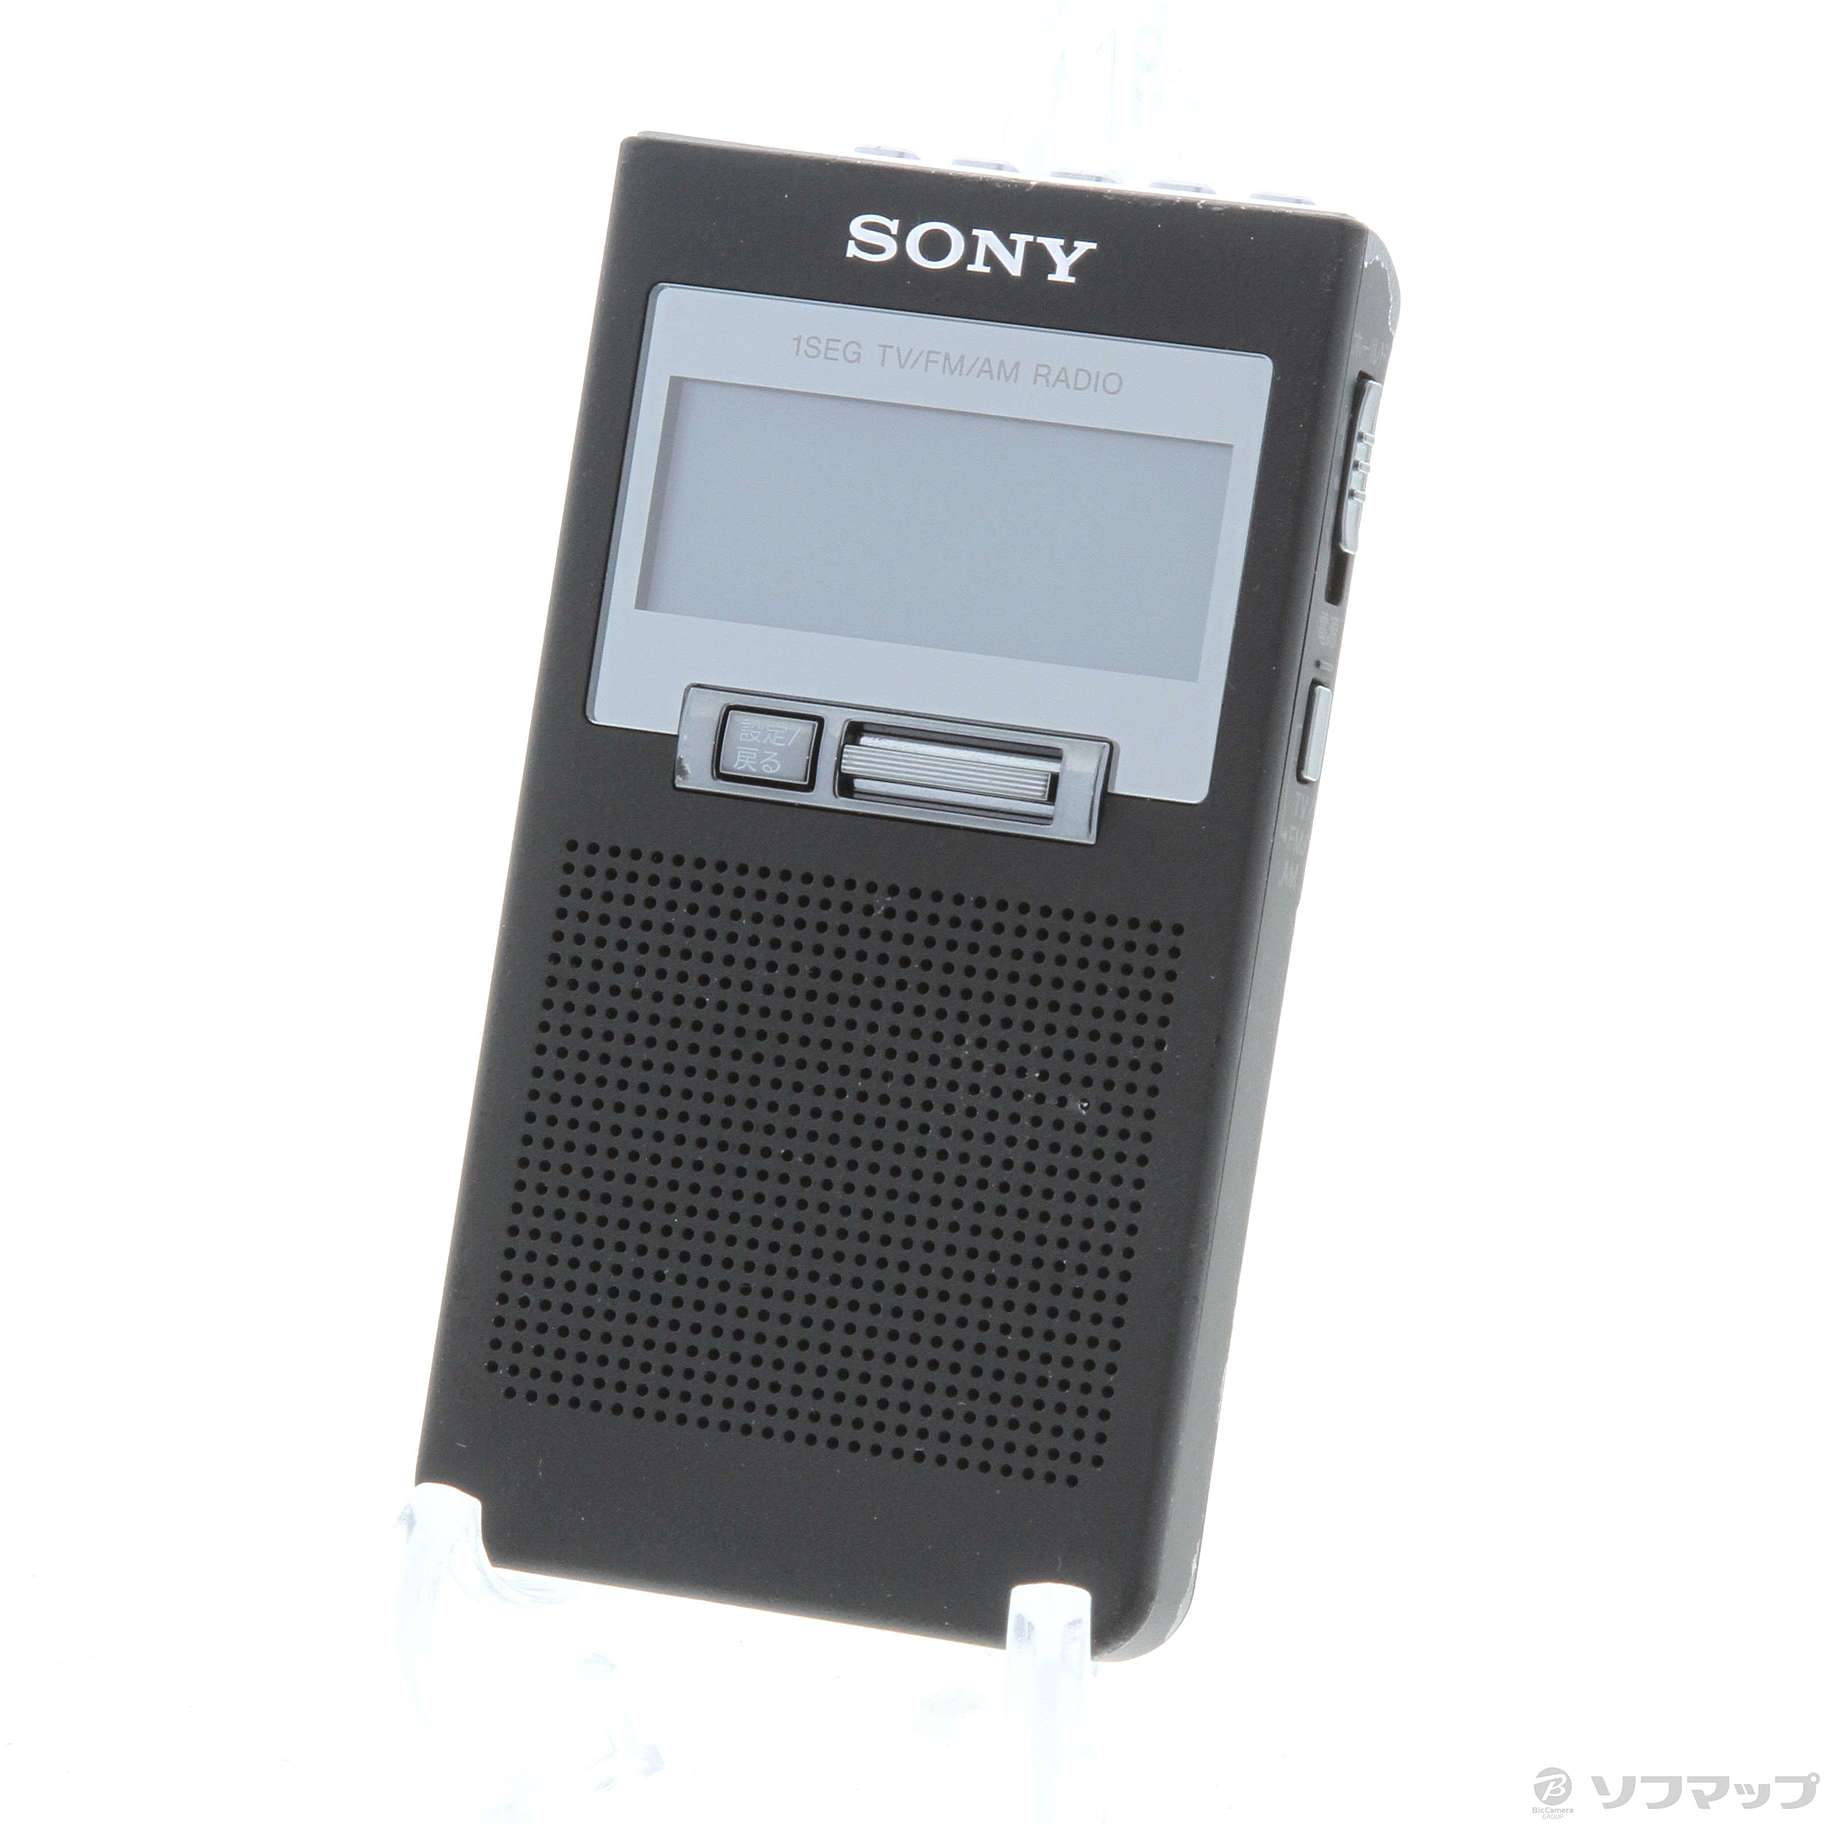 ソニー ポケットラジオ XDR-64TV ポケッタブルサイズ ワイドFM対応 FM AM ワンセグTV音声対応 ブラック XDR-64TV B